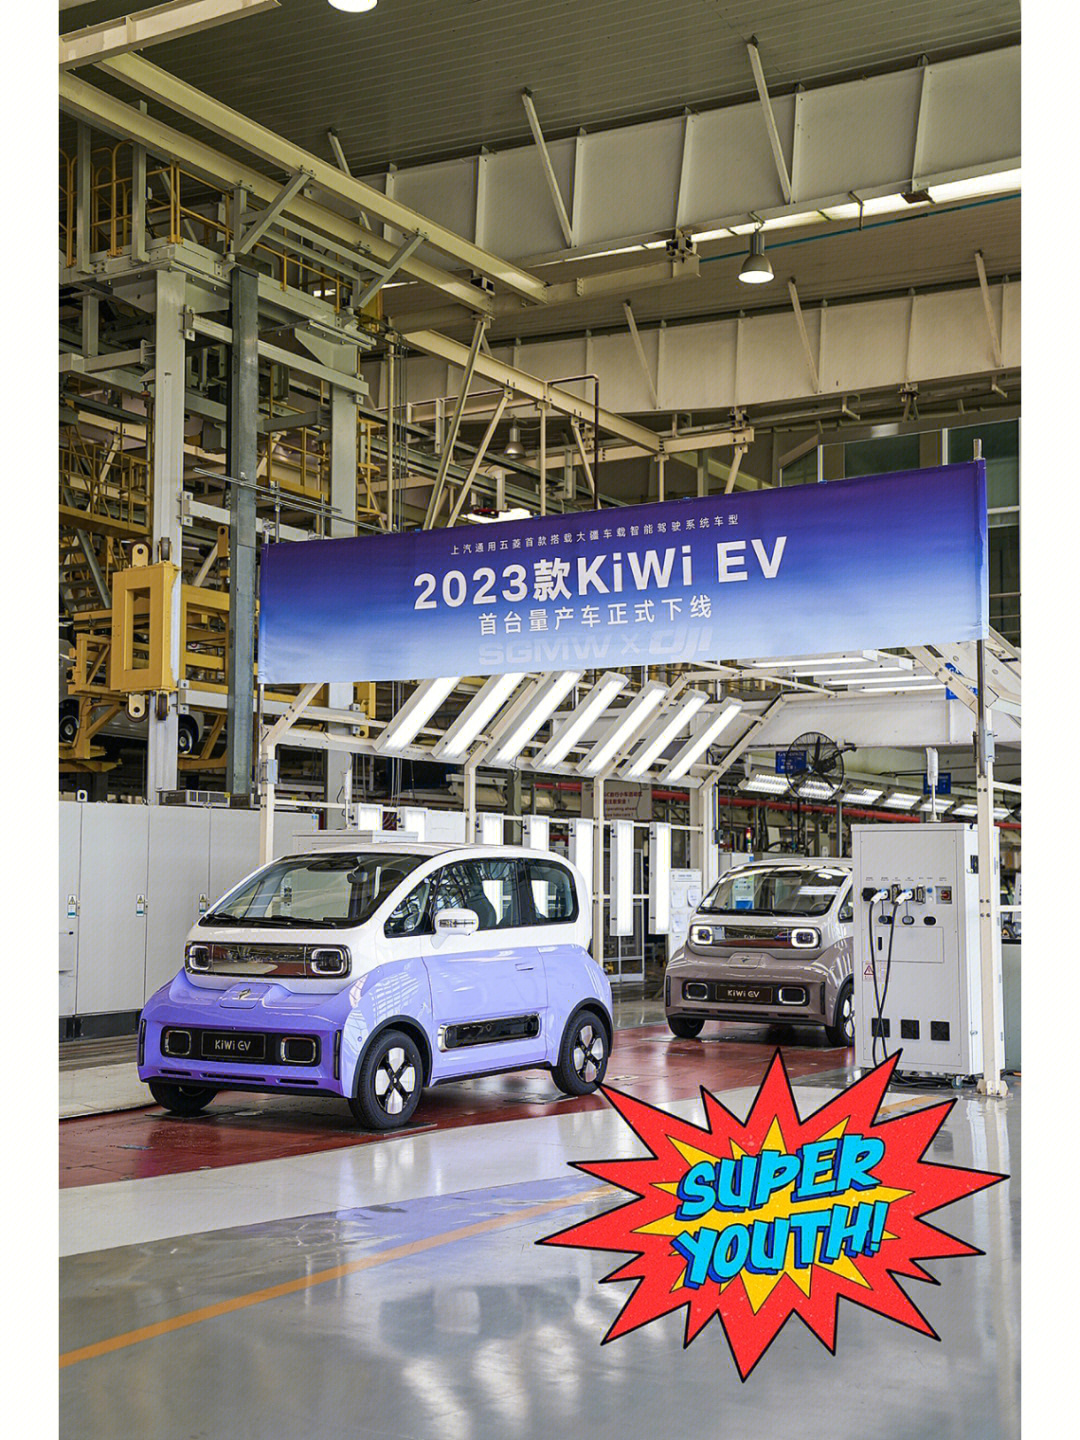 2023款kiwiev#kiwi智能驾驶来了来了751575152023款kiwi ev